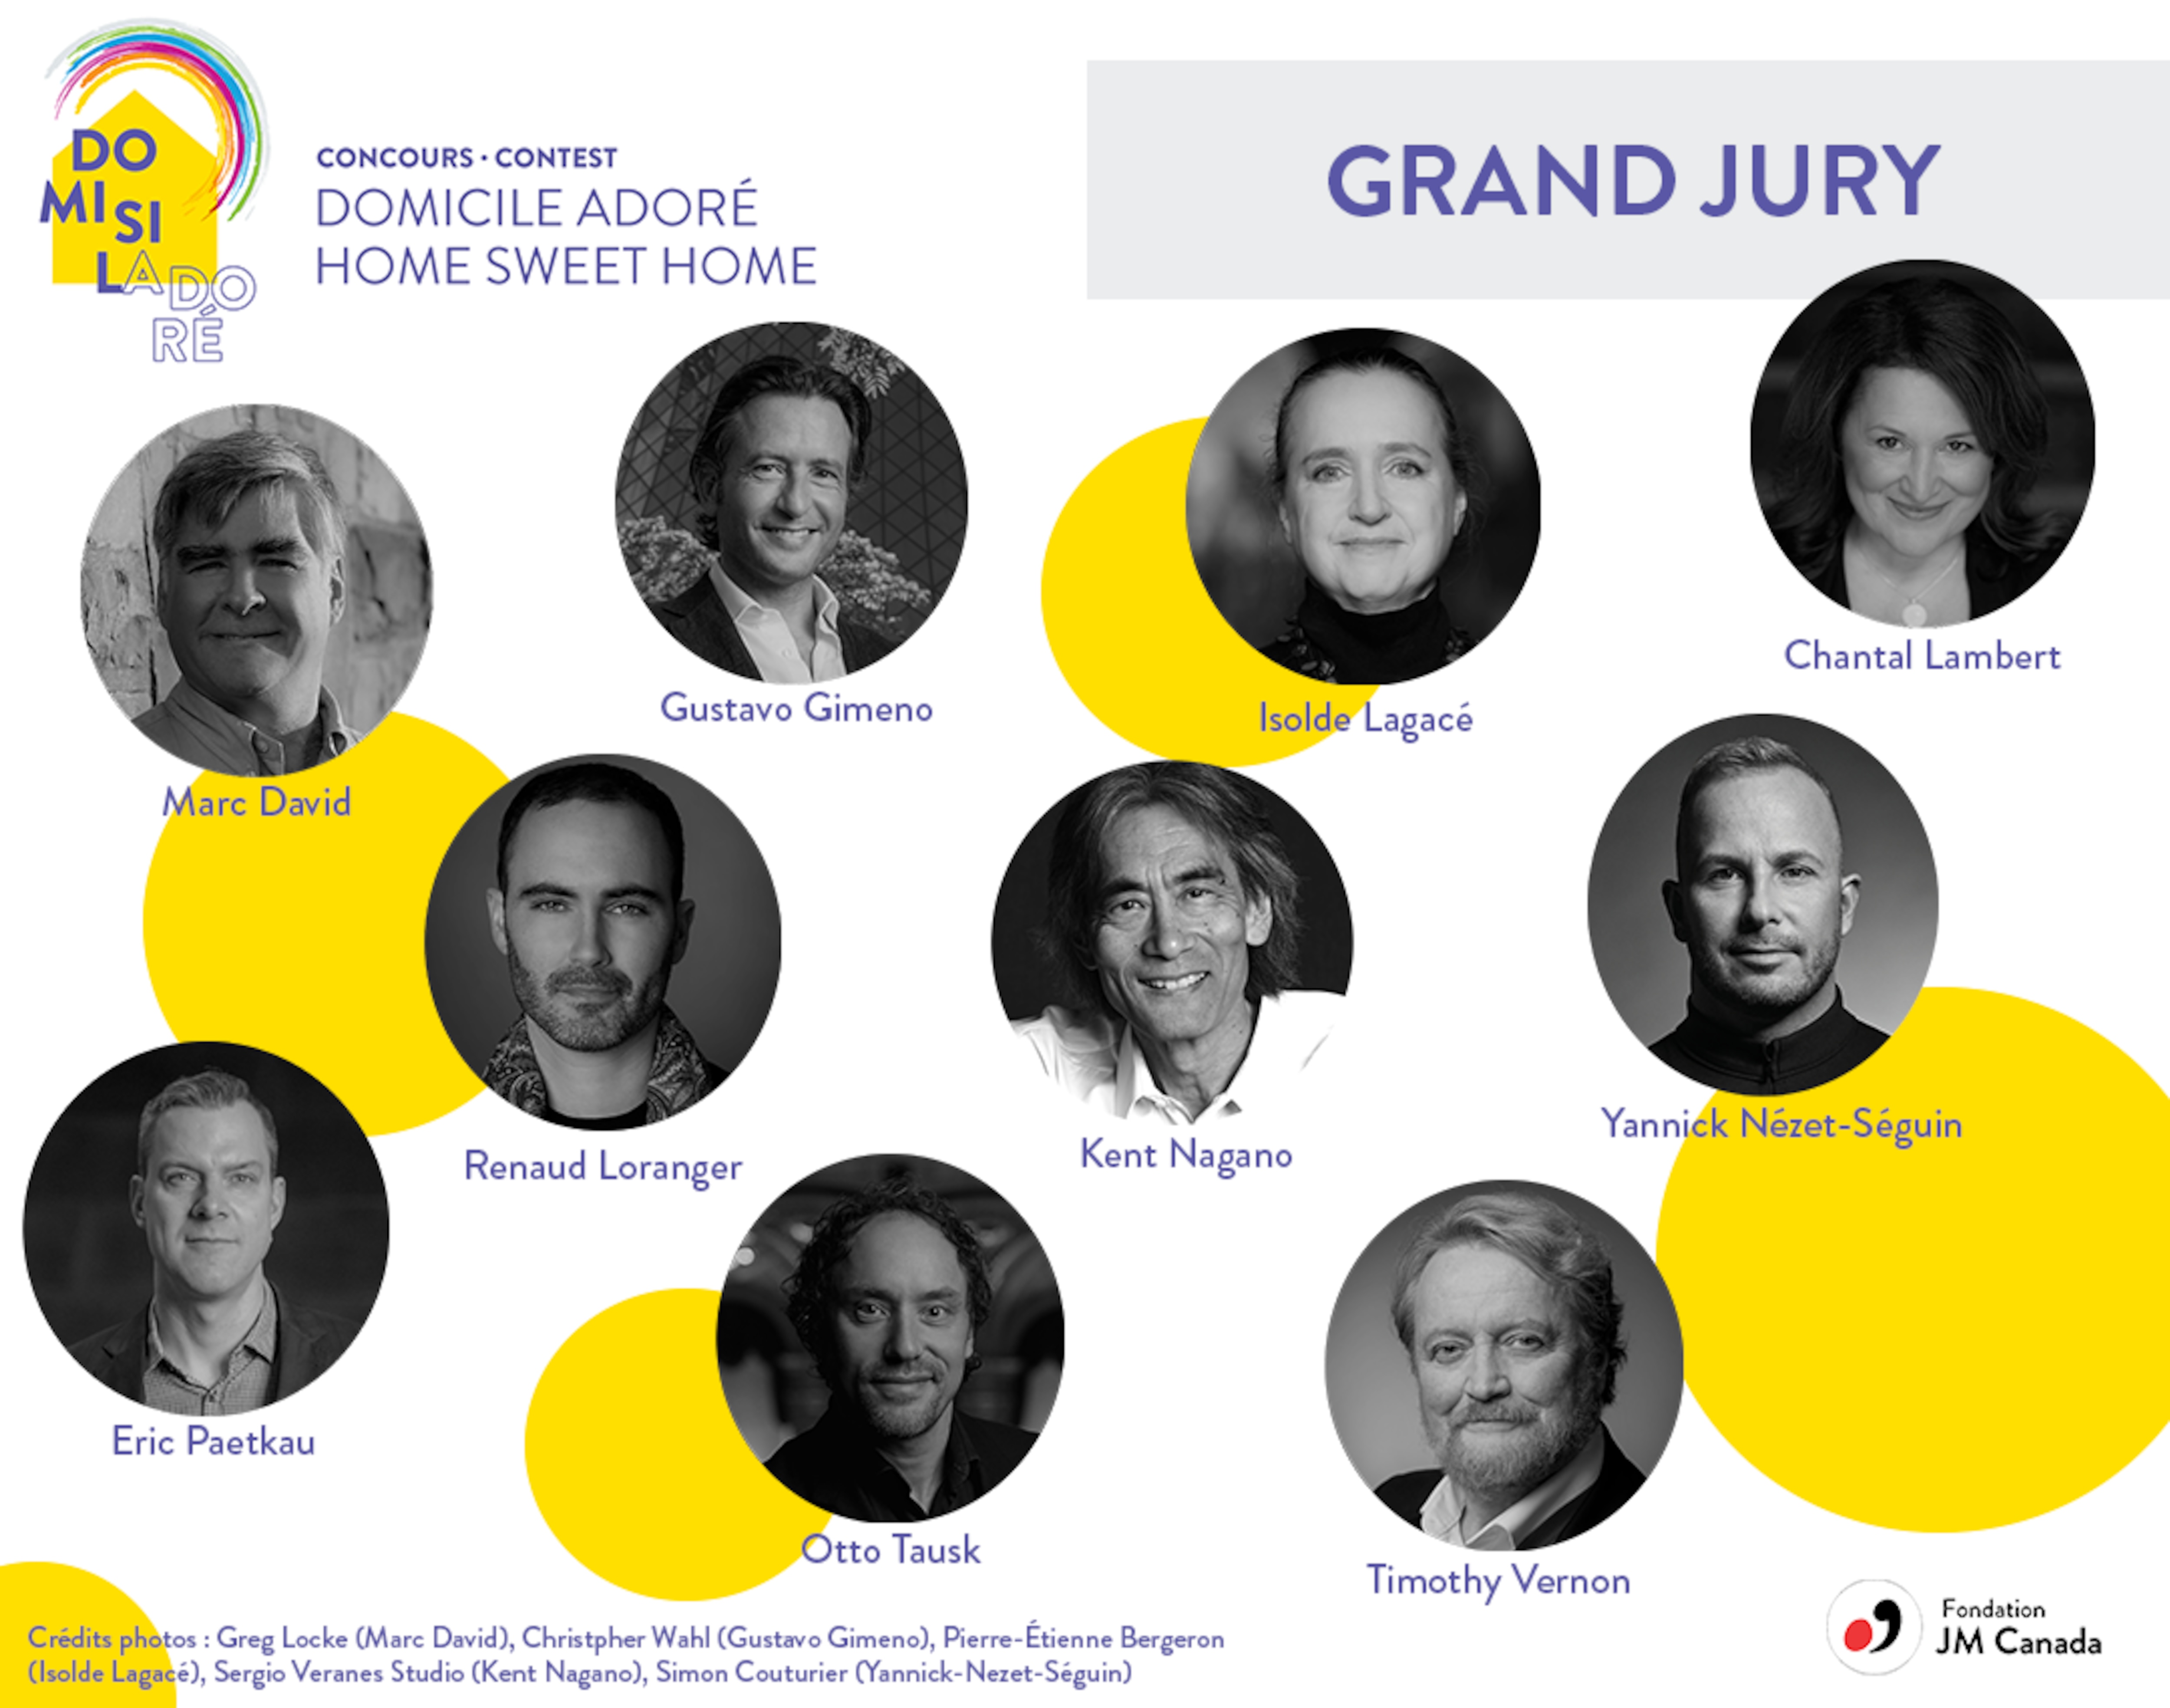 Affiche du concours Do Mi Si La Do Ré (Domicile adoré) avec les visages des juges.